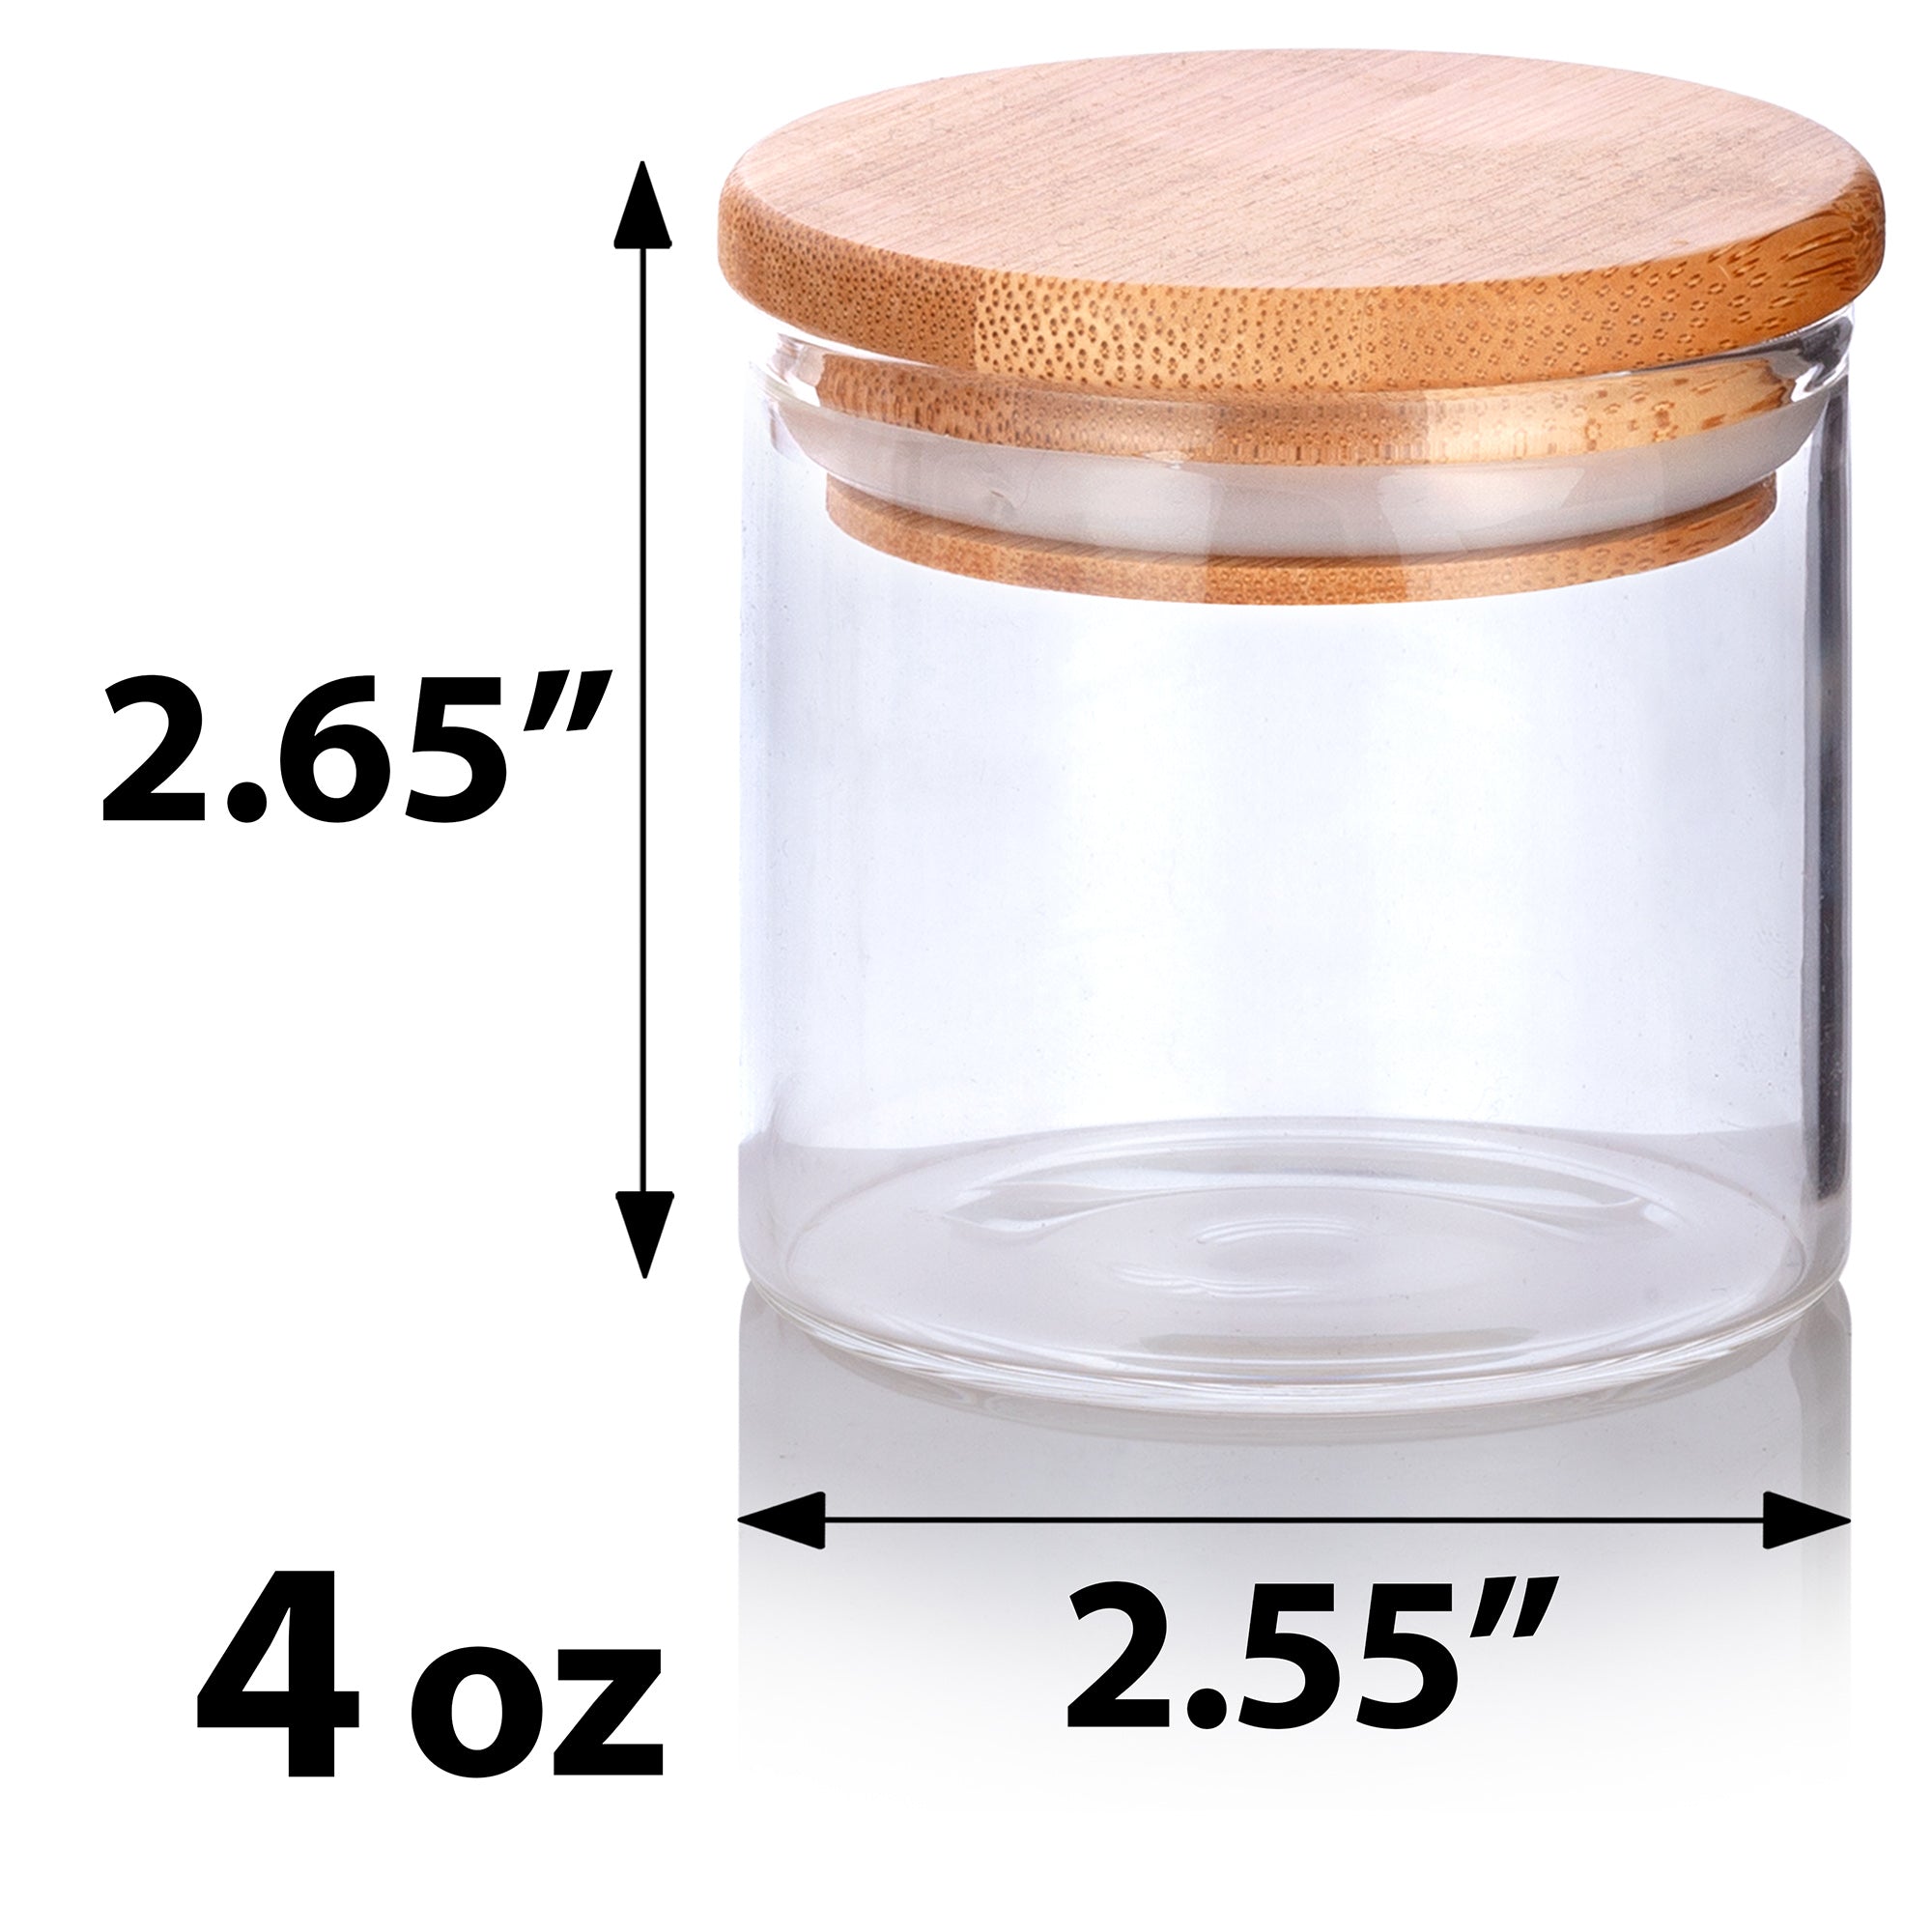 10 oz Clear candle jars w/ Bamboo Lids - Set of 12 pcs